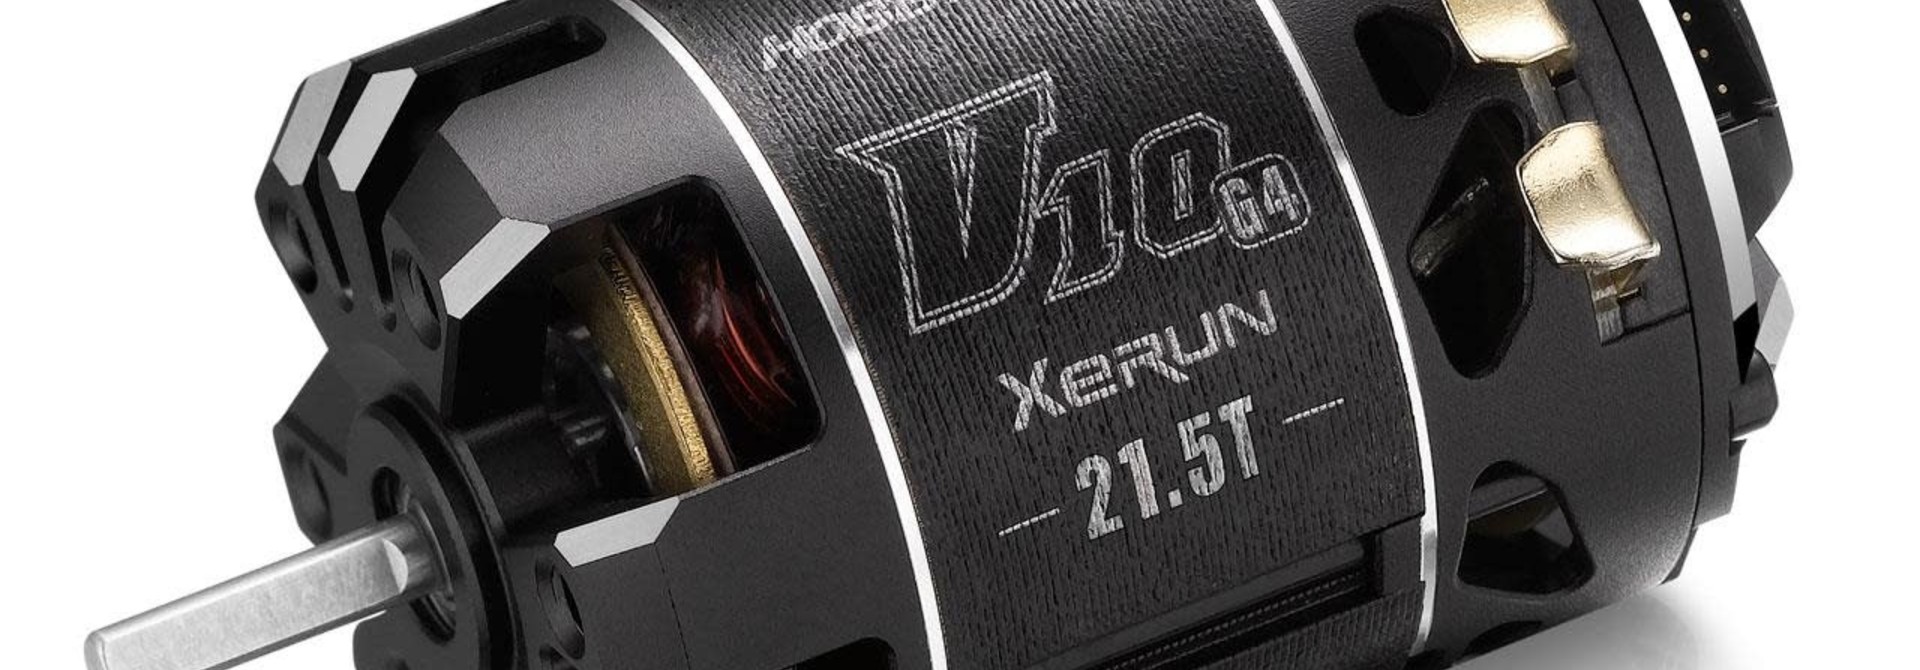 Xerun V10 Brushless Motor G4R (2-3s) 21.5T Sensored 1:10